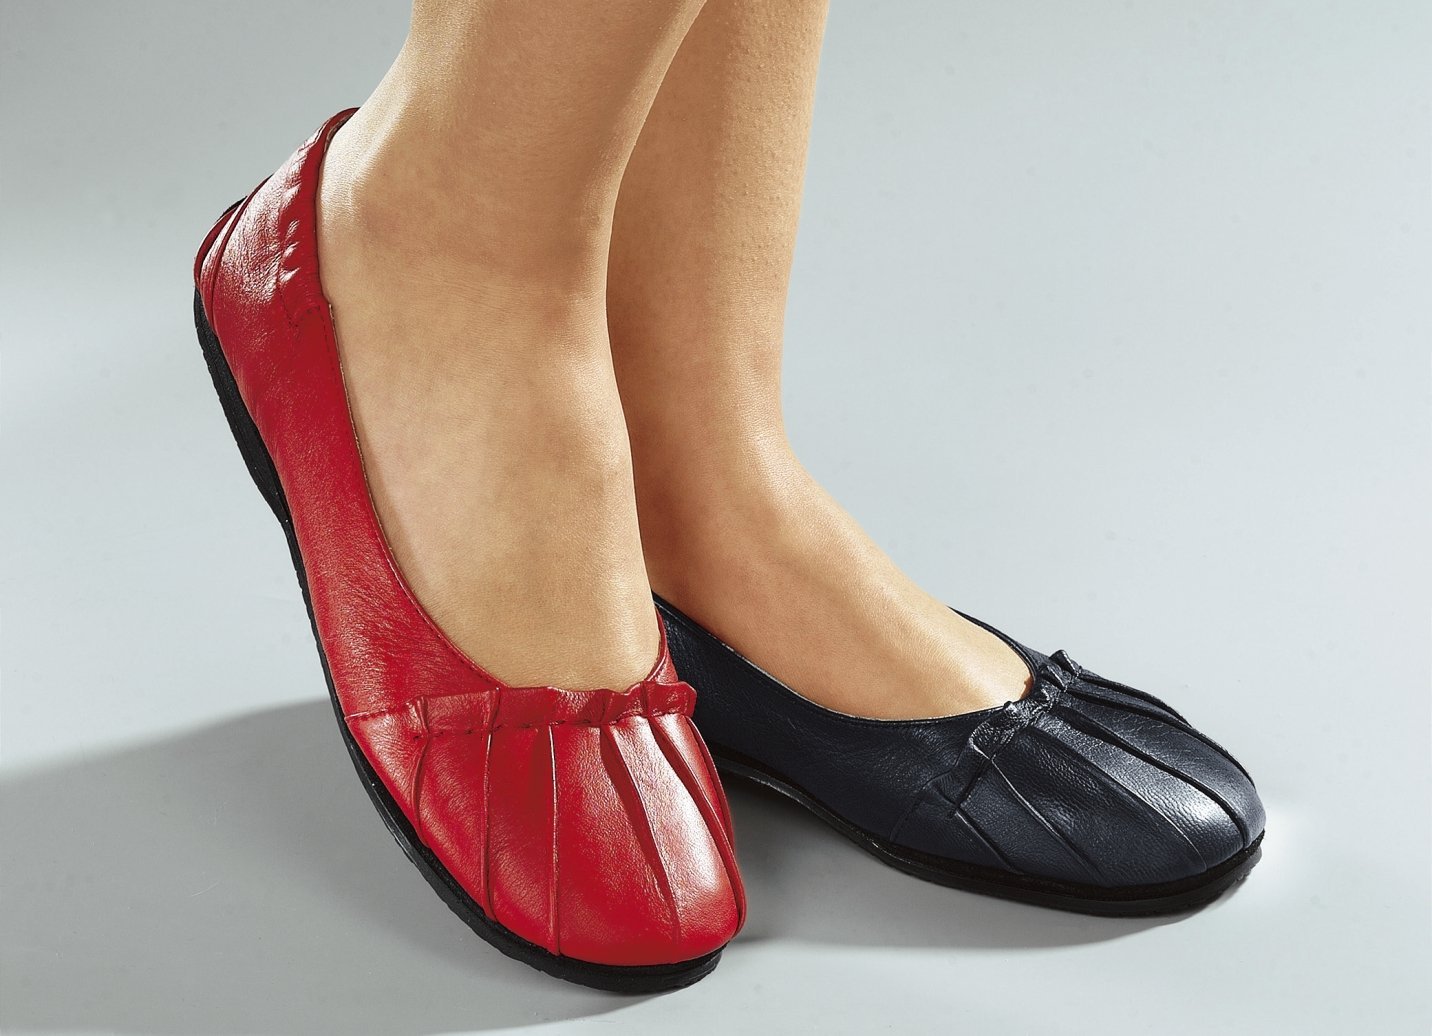 Сайт большая обувь. Обувь на валберис женская туфли на широкую ногу. Женская обувь больших размеров. Обувь для широкой стопы женская. Туфли на полную ногу женские.